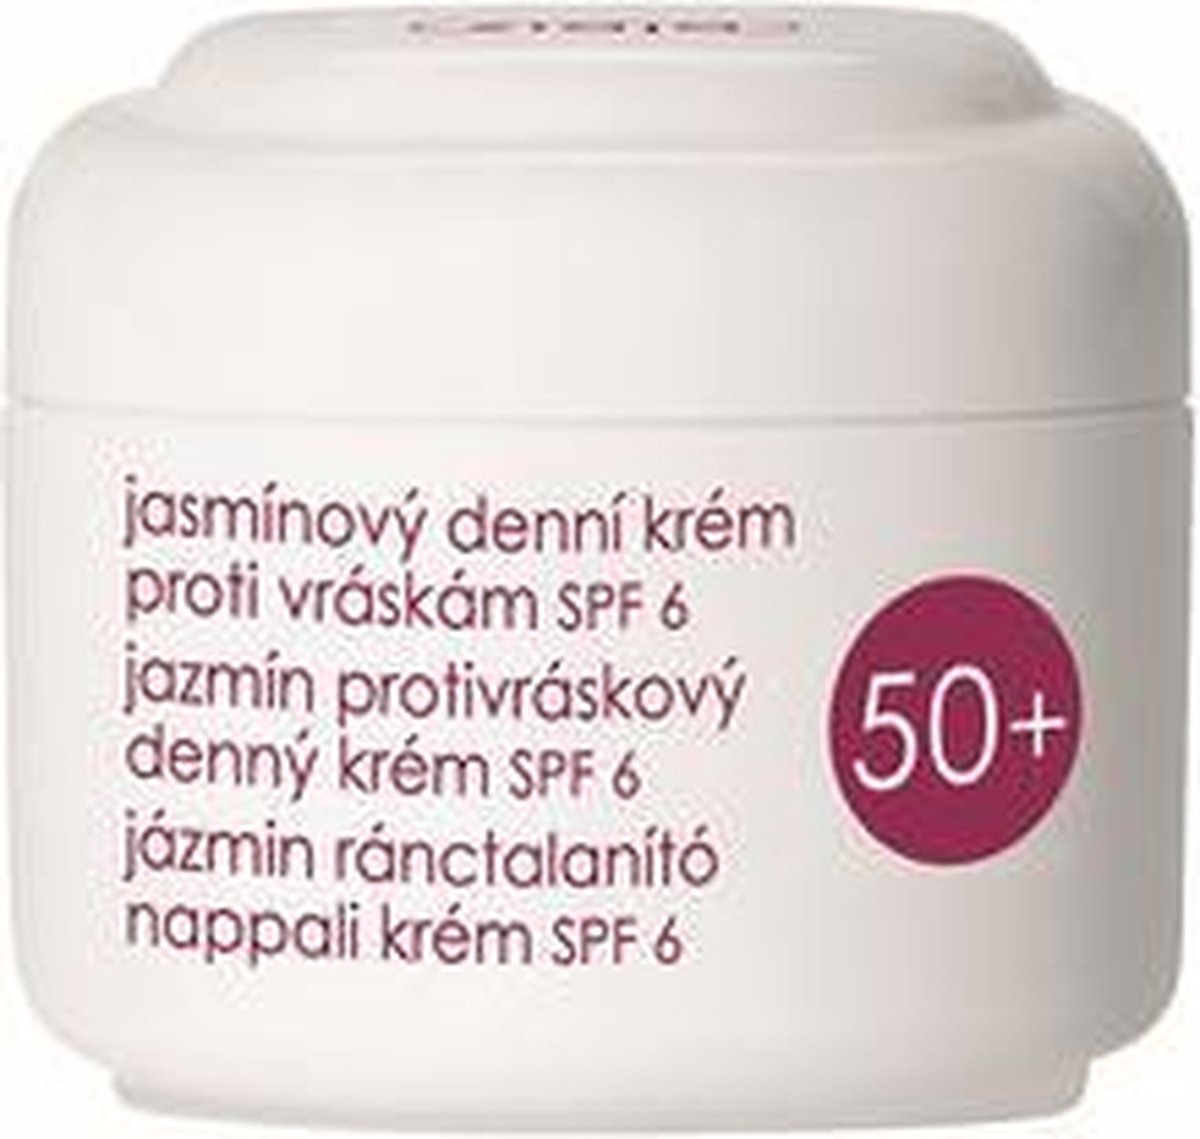 Ziaja - Day Cream SPF 6 Jasmine 50 ml - 50ml